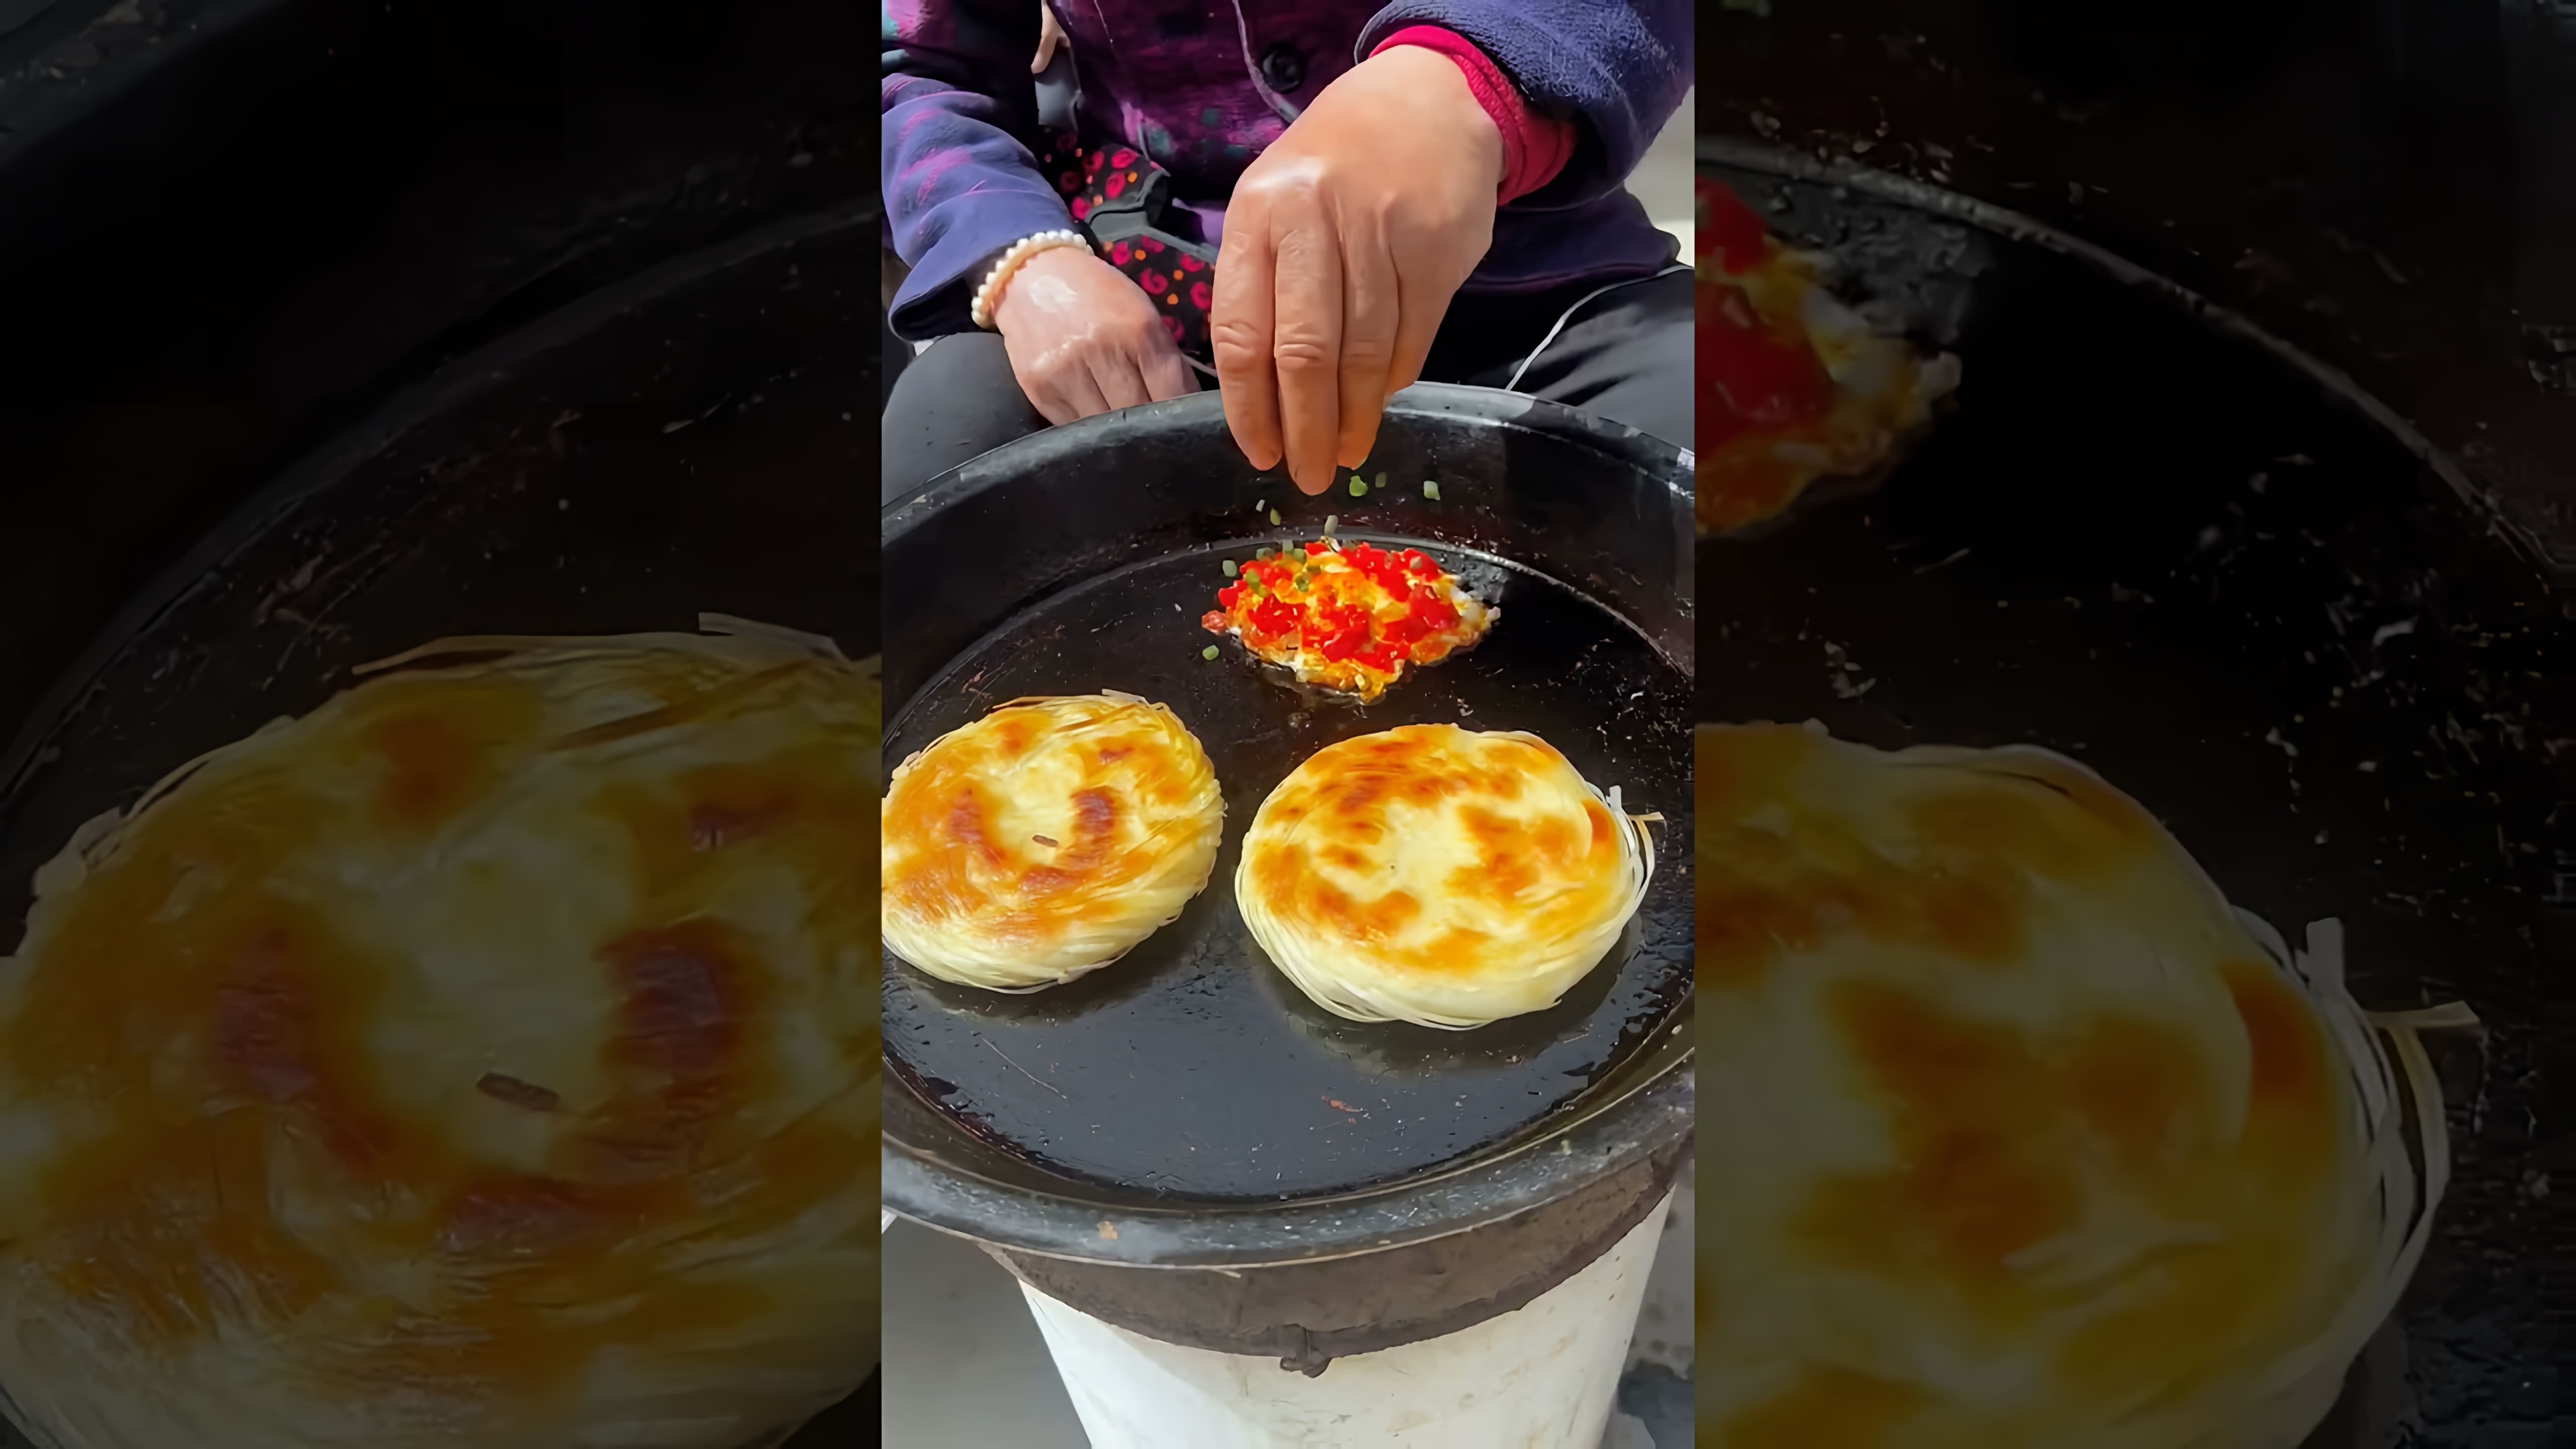 Chinese Burger Egg Enchiladas - это видео-ролик, который демонстрирует процесс приготовления китайского бургера с яйцом и энчиладой